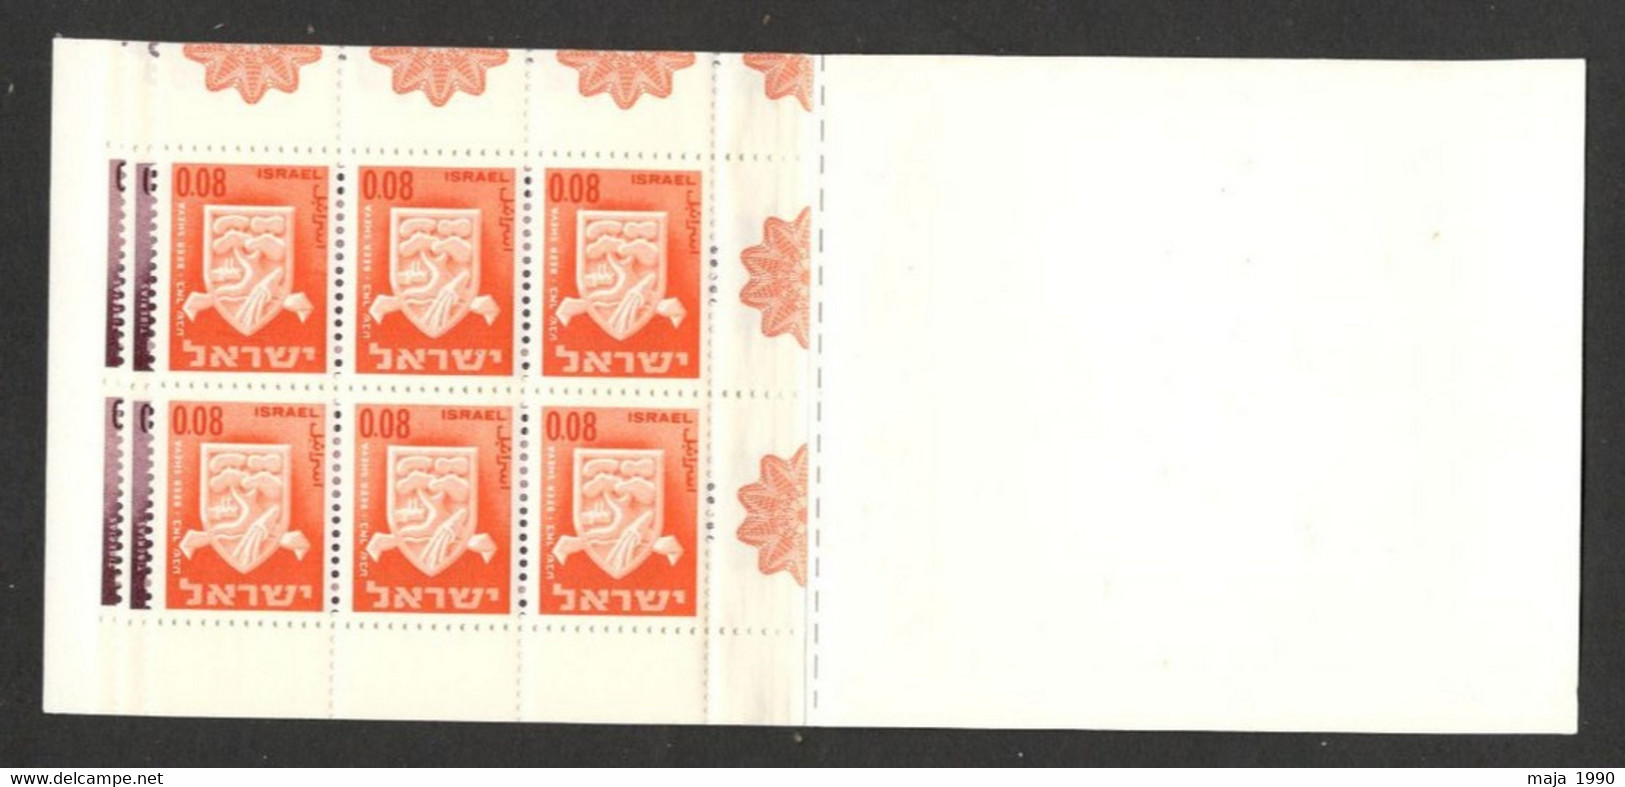 ISRAEL - MNH BOOKLET - DEFINITIVE STAMPS - 1965. - Markenheftchen